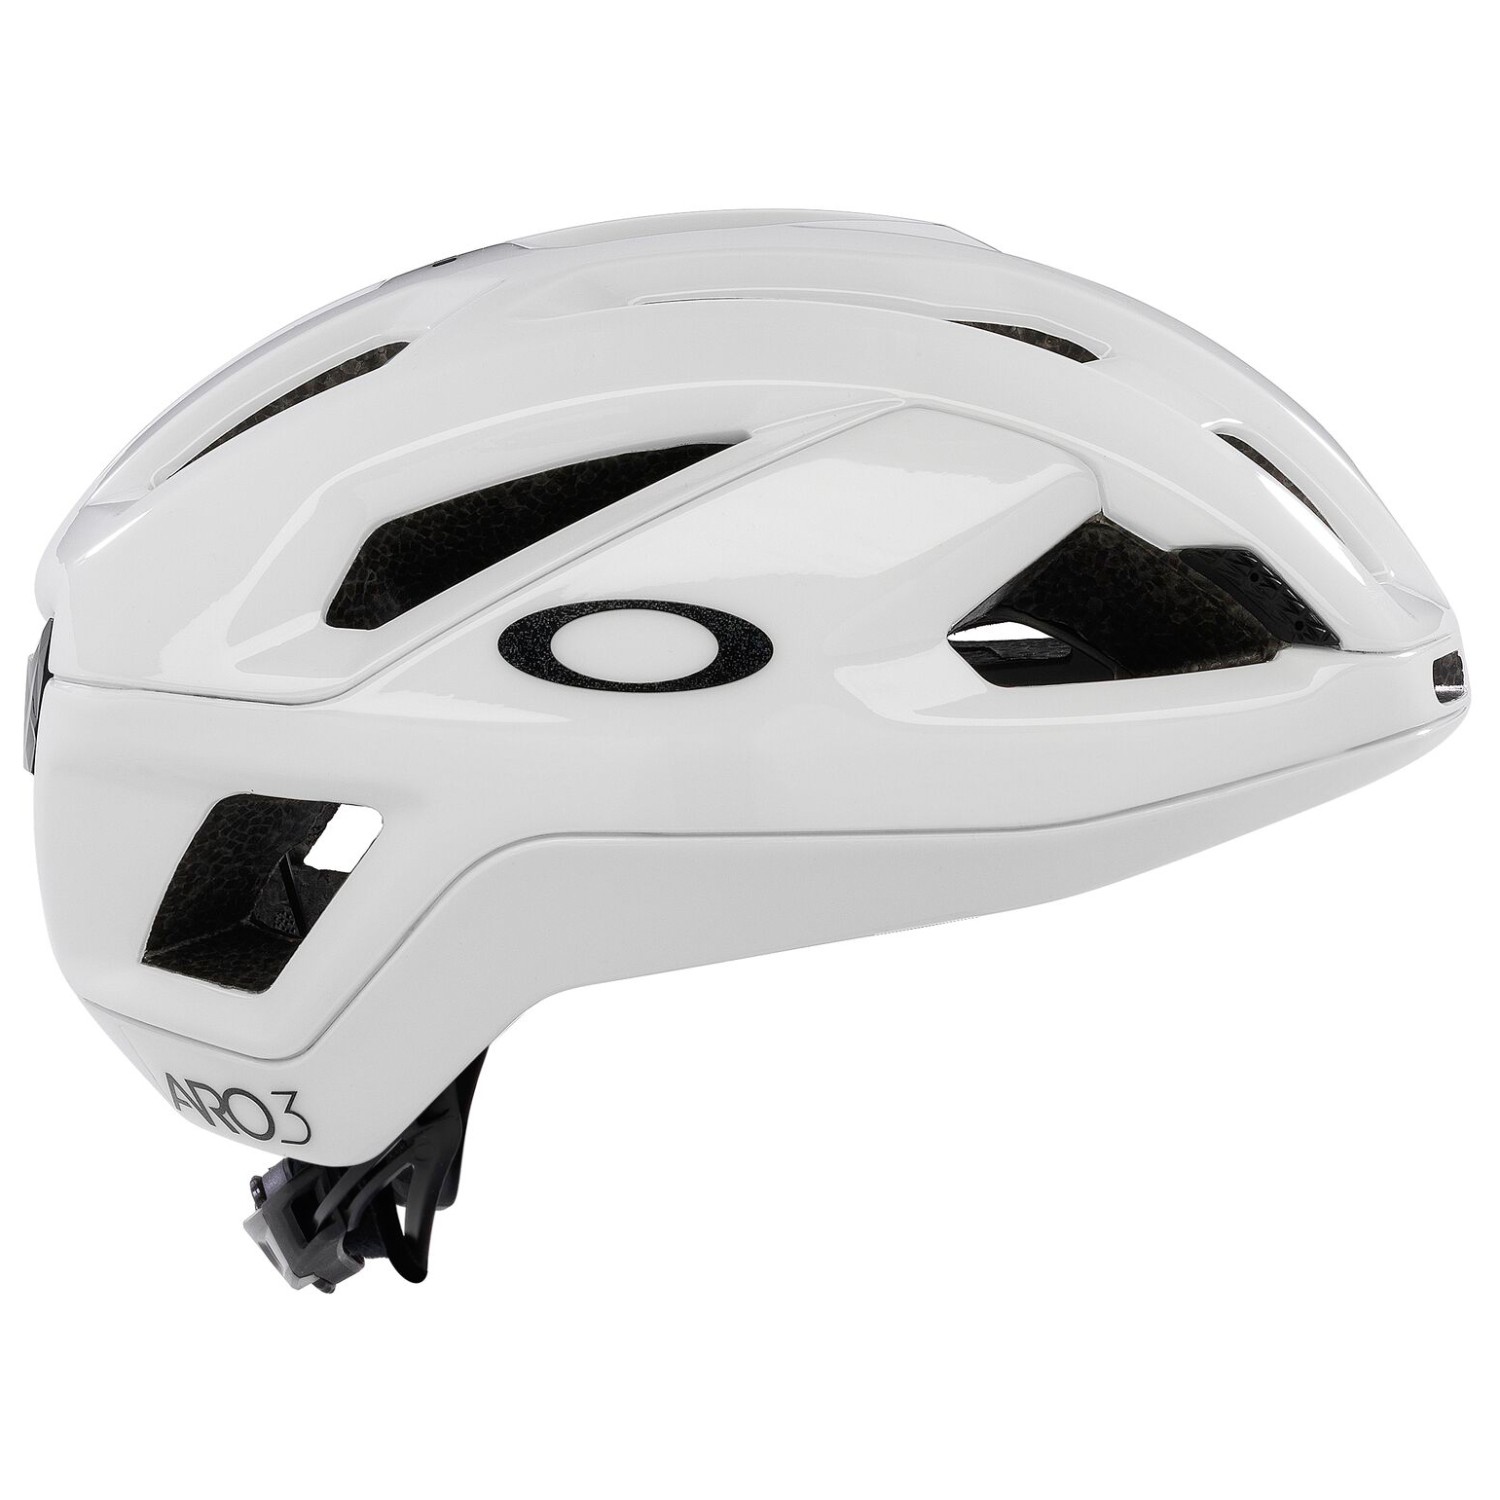 Велосипедный шлем Oakley ARO3 Endurance, цвет Polished White